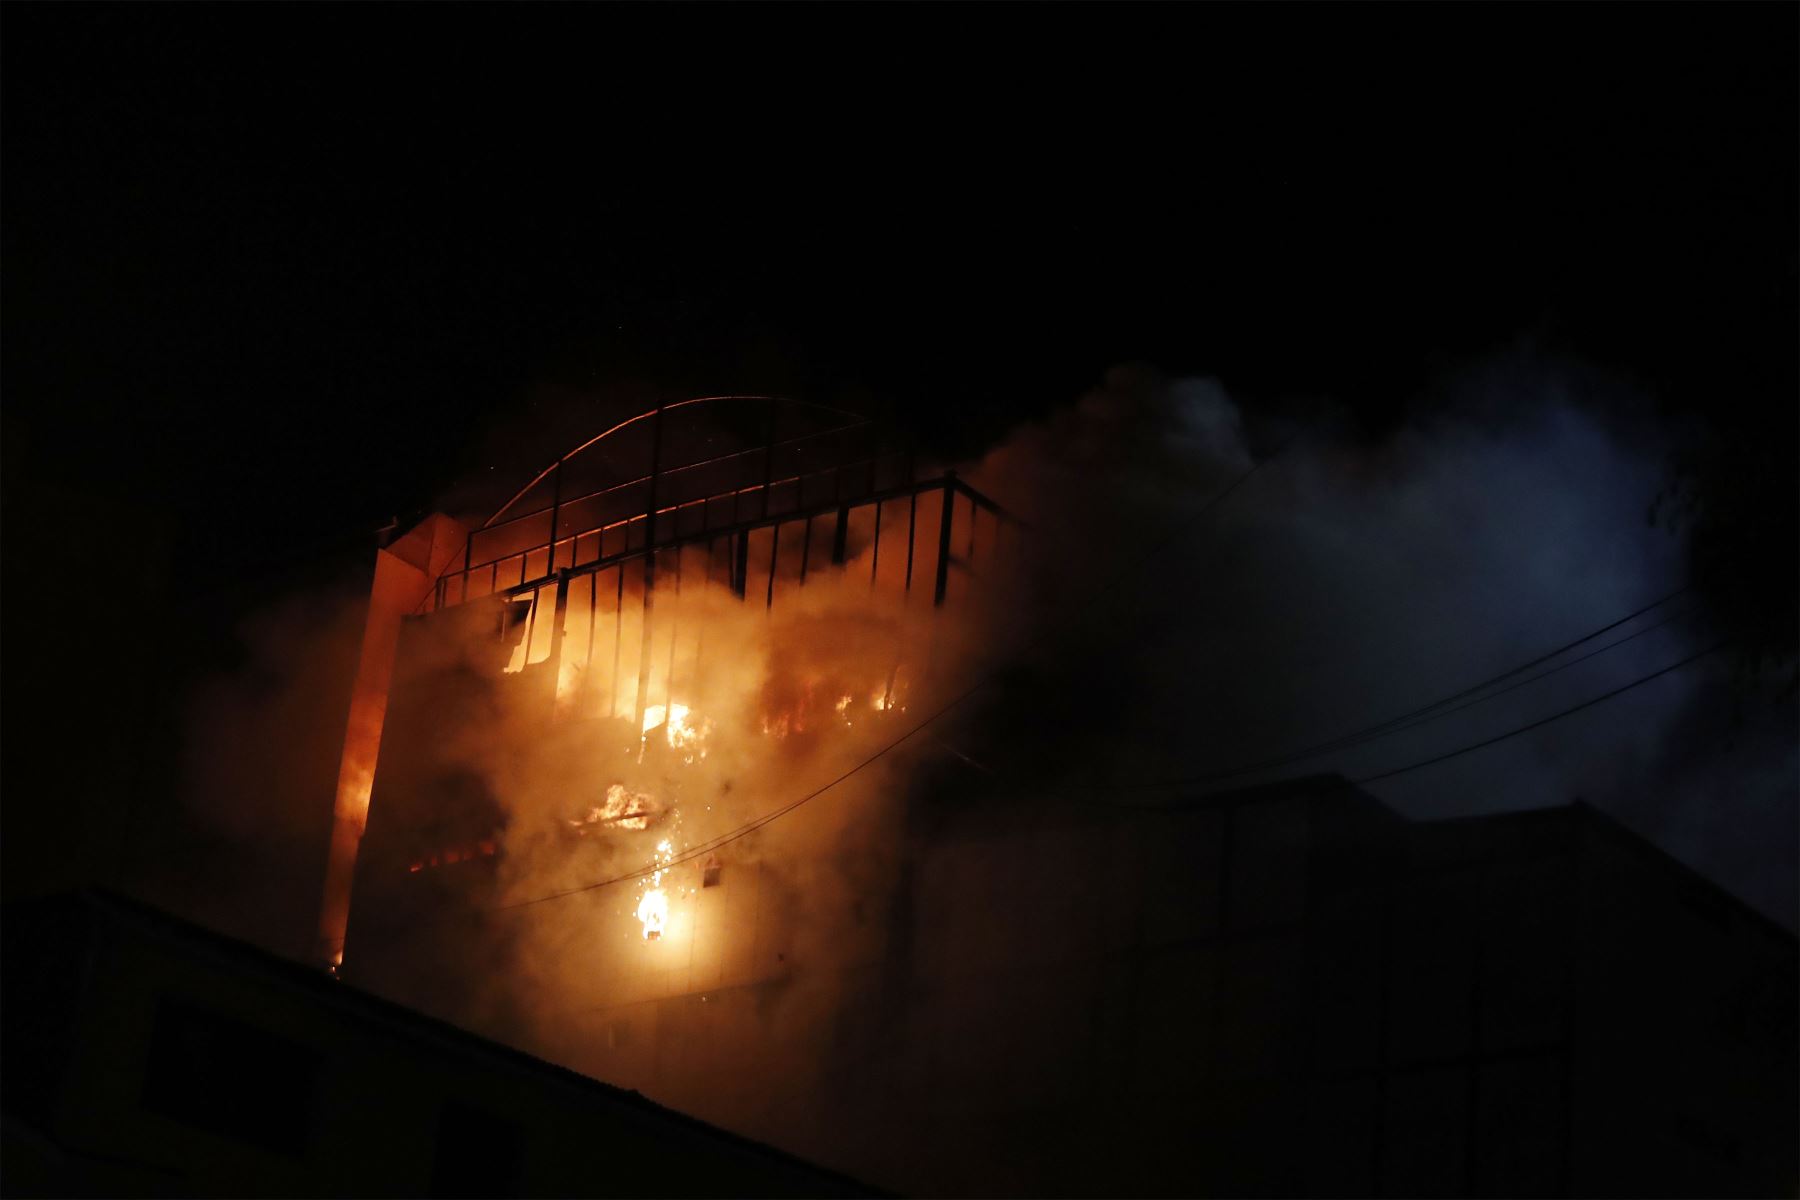 Un incendio de grandes proporciones se registra en la parte alta de un edificio ubicado en la cuadra 11 del jirón Andahuaylas, cruce con jirón Puno, en el conglomerado Mesa Redonda.
Foto: ANDINA/Renato Pajuelo